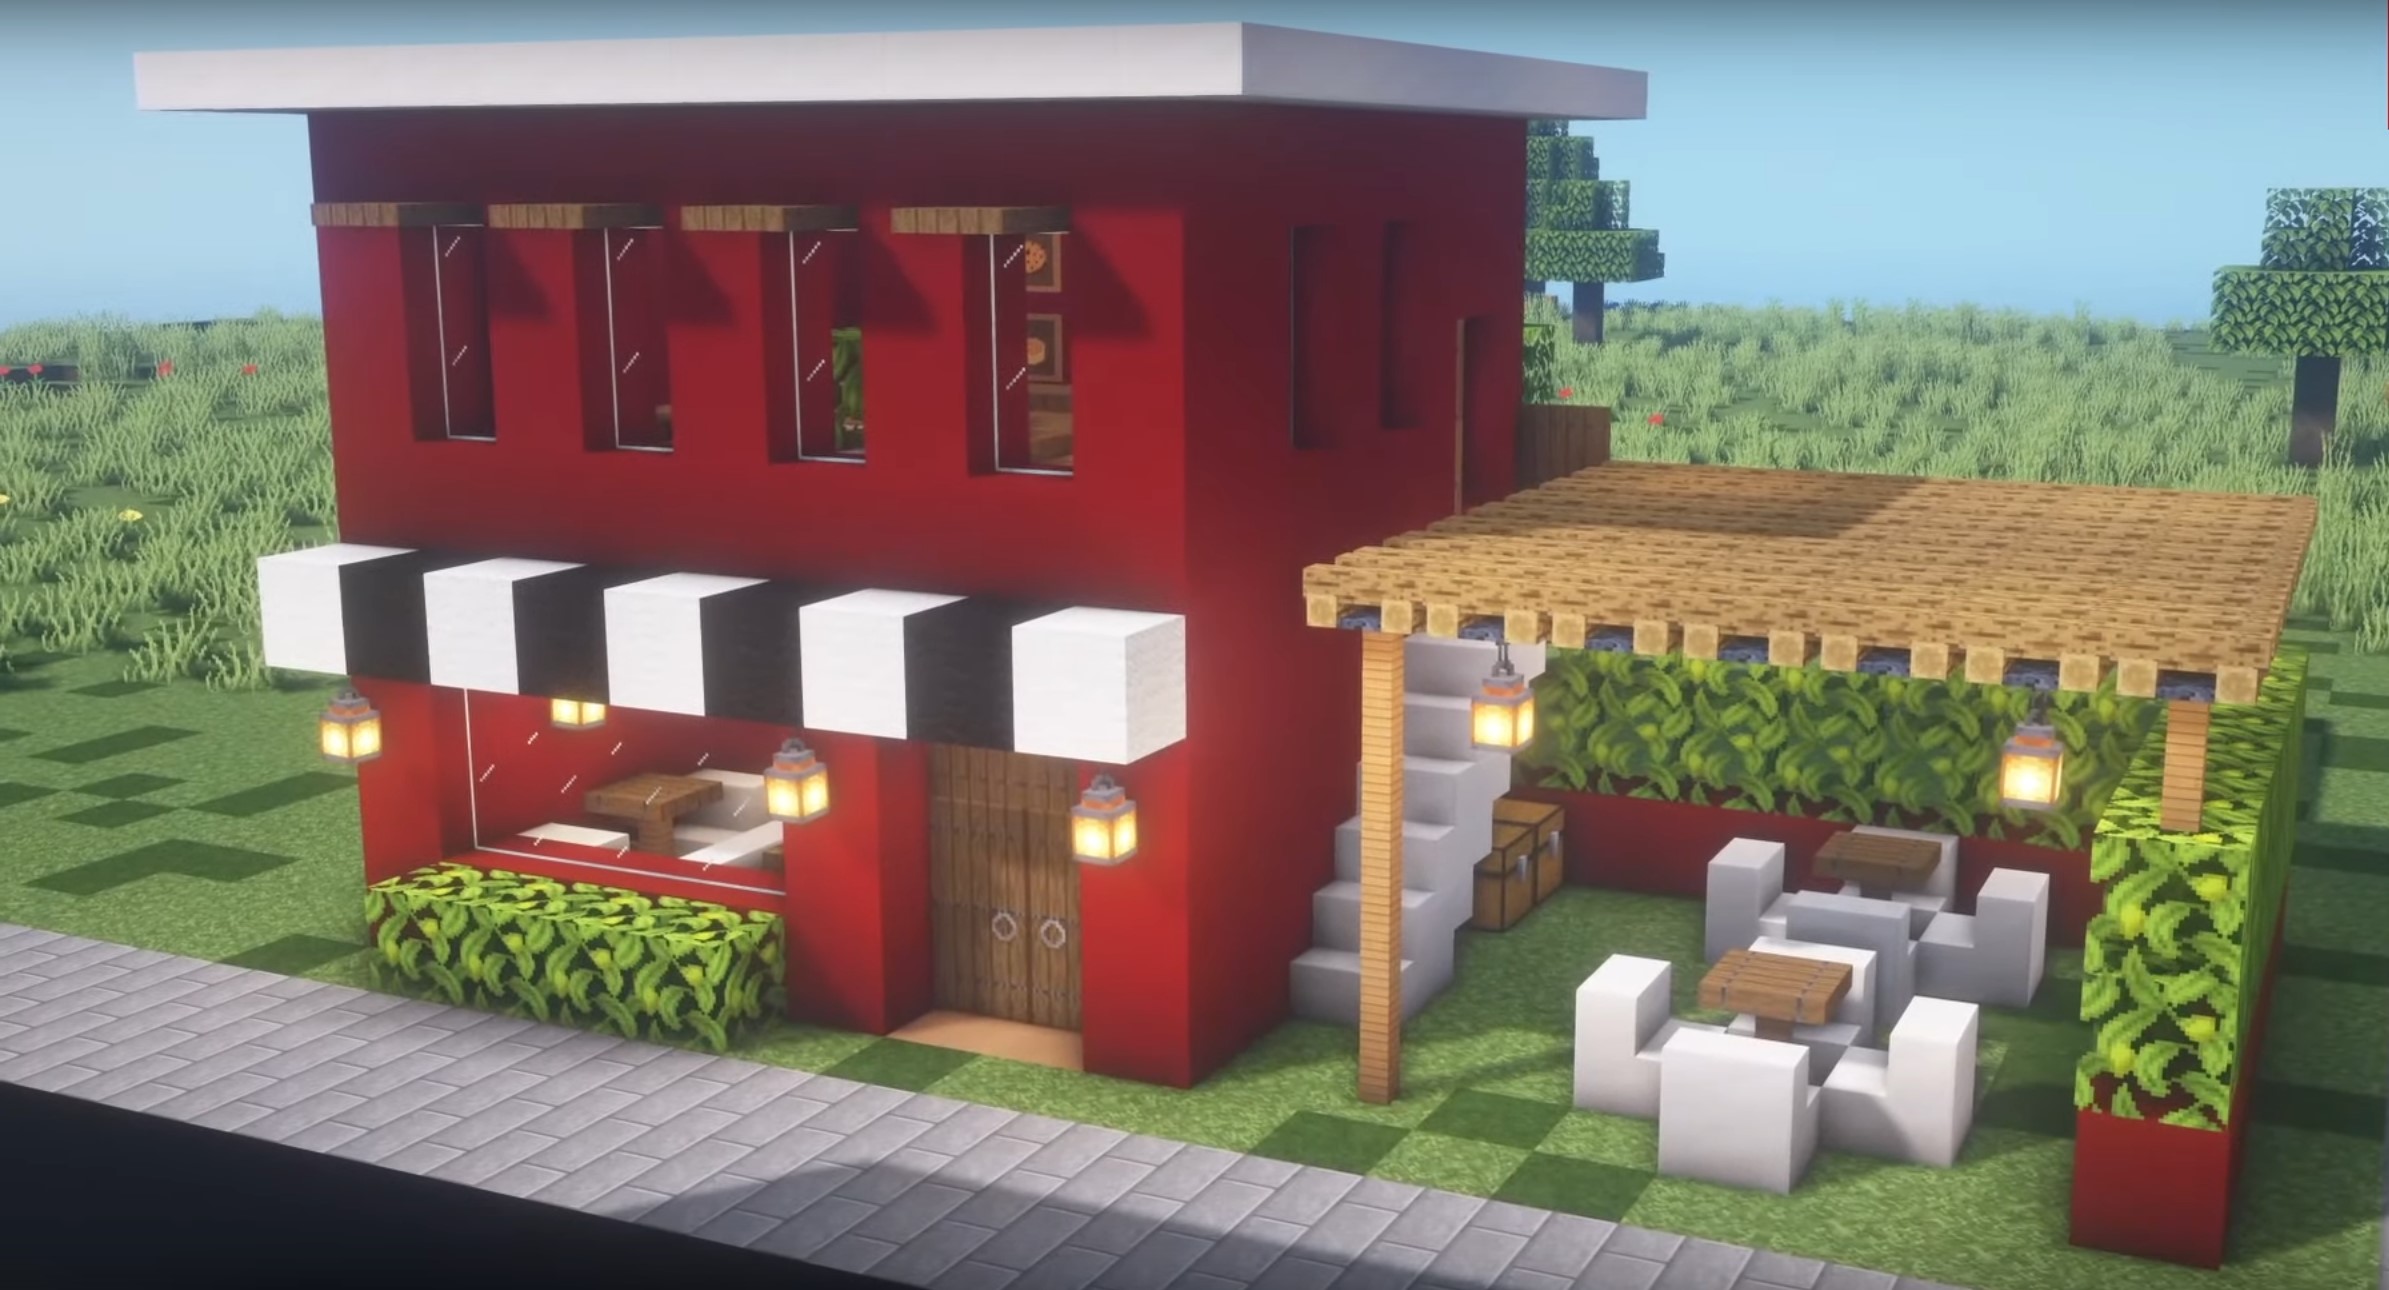 Cute cafe minecraft building idea